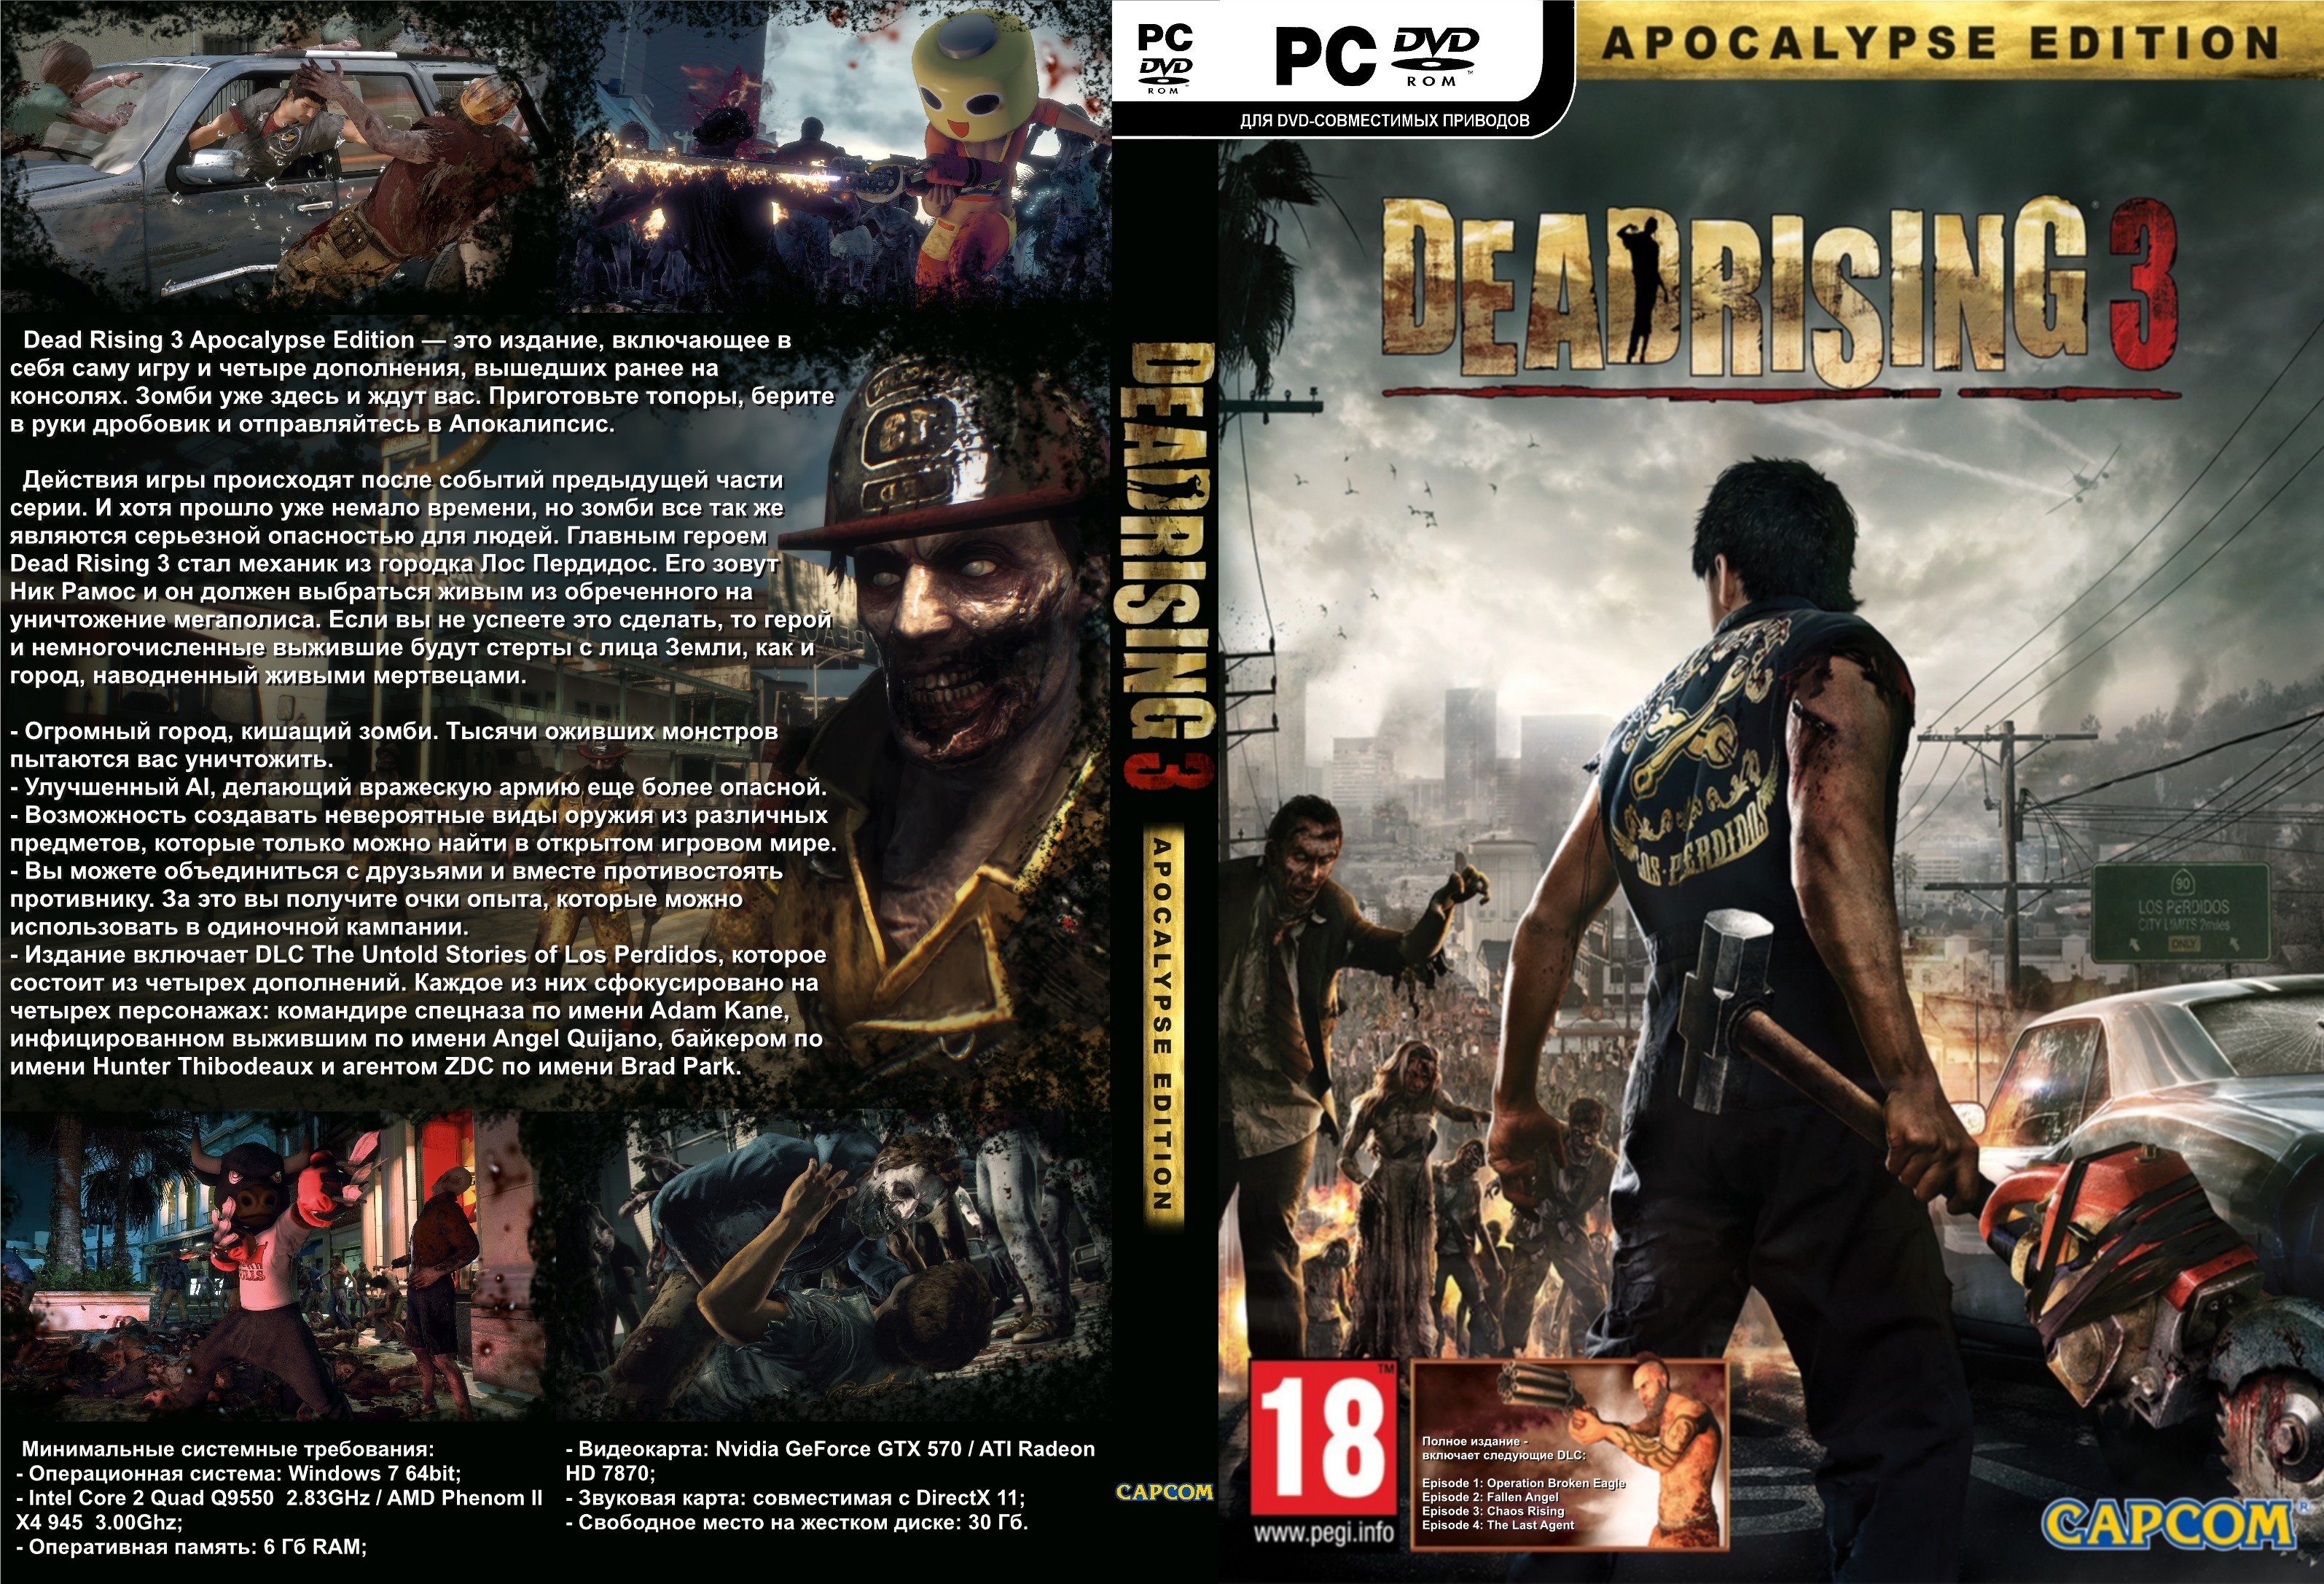 Dead Rising 3 Apocalypse Edition box cover